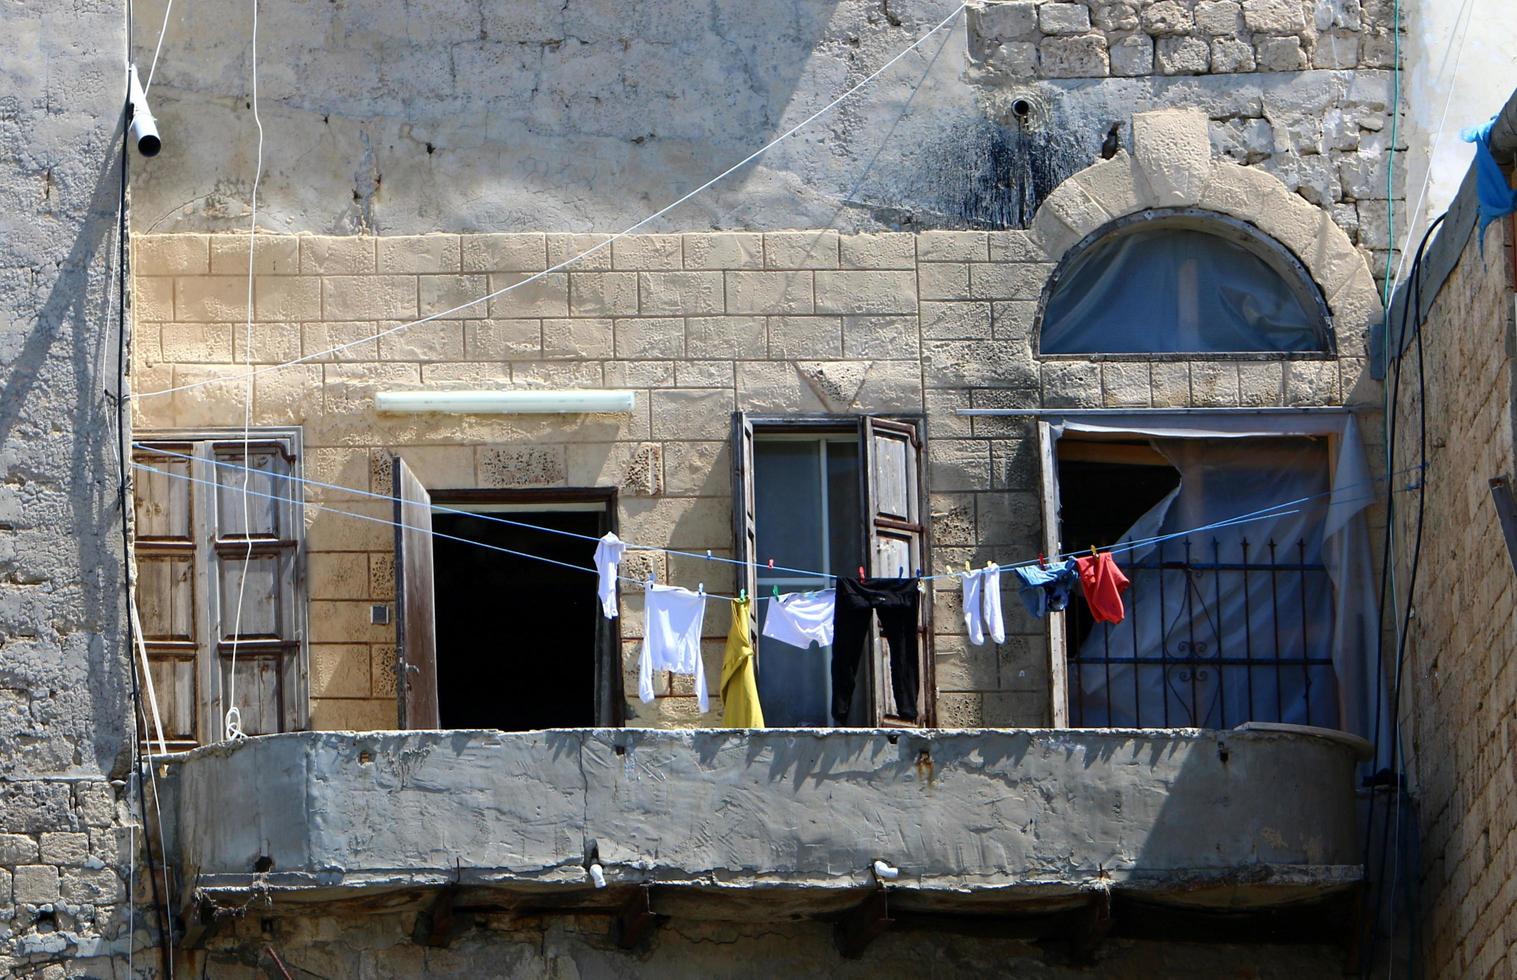 tel aviv israel 23 de junho de 2020 fora da janela, a roupa está sendo seca em uma corda na fachada do prédio. foto